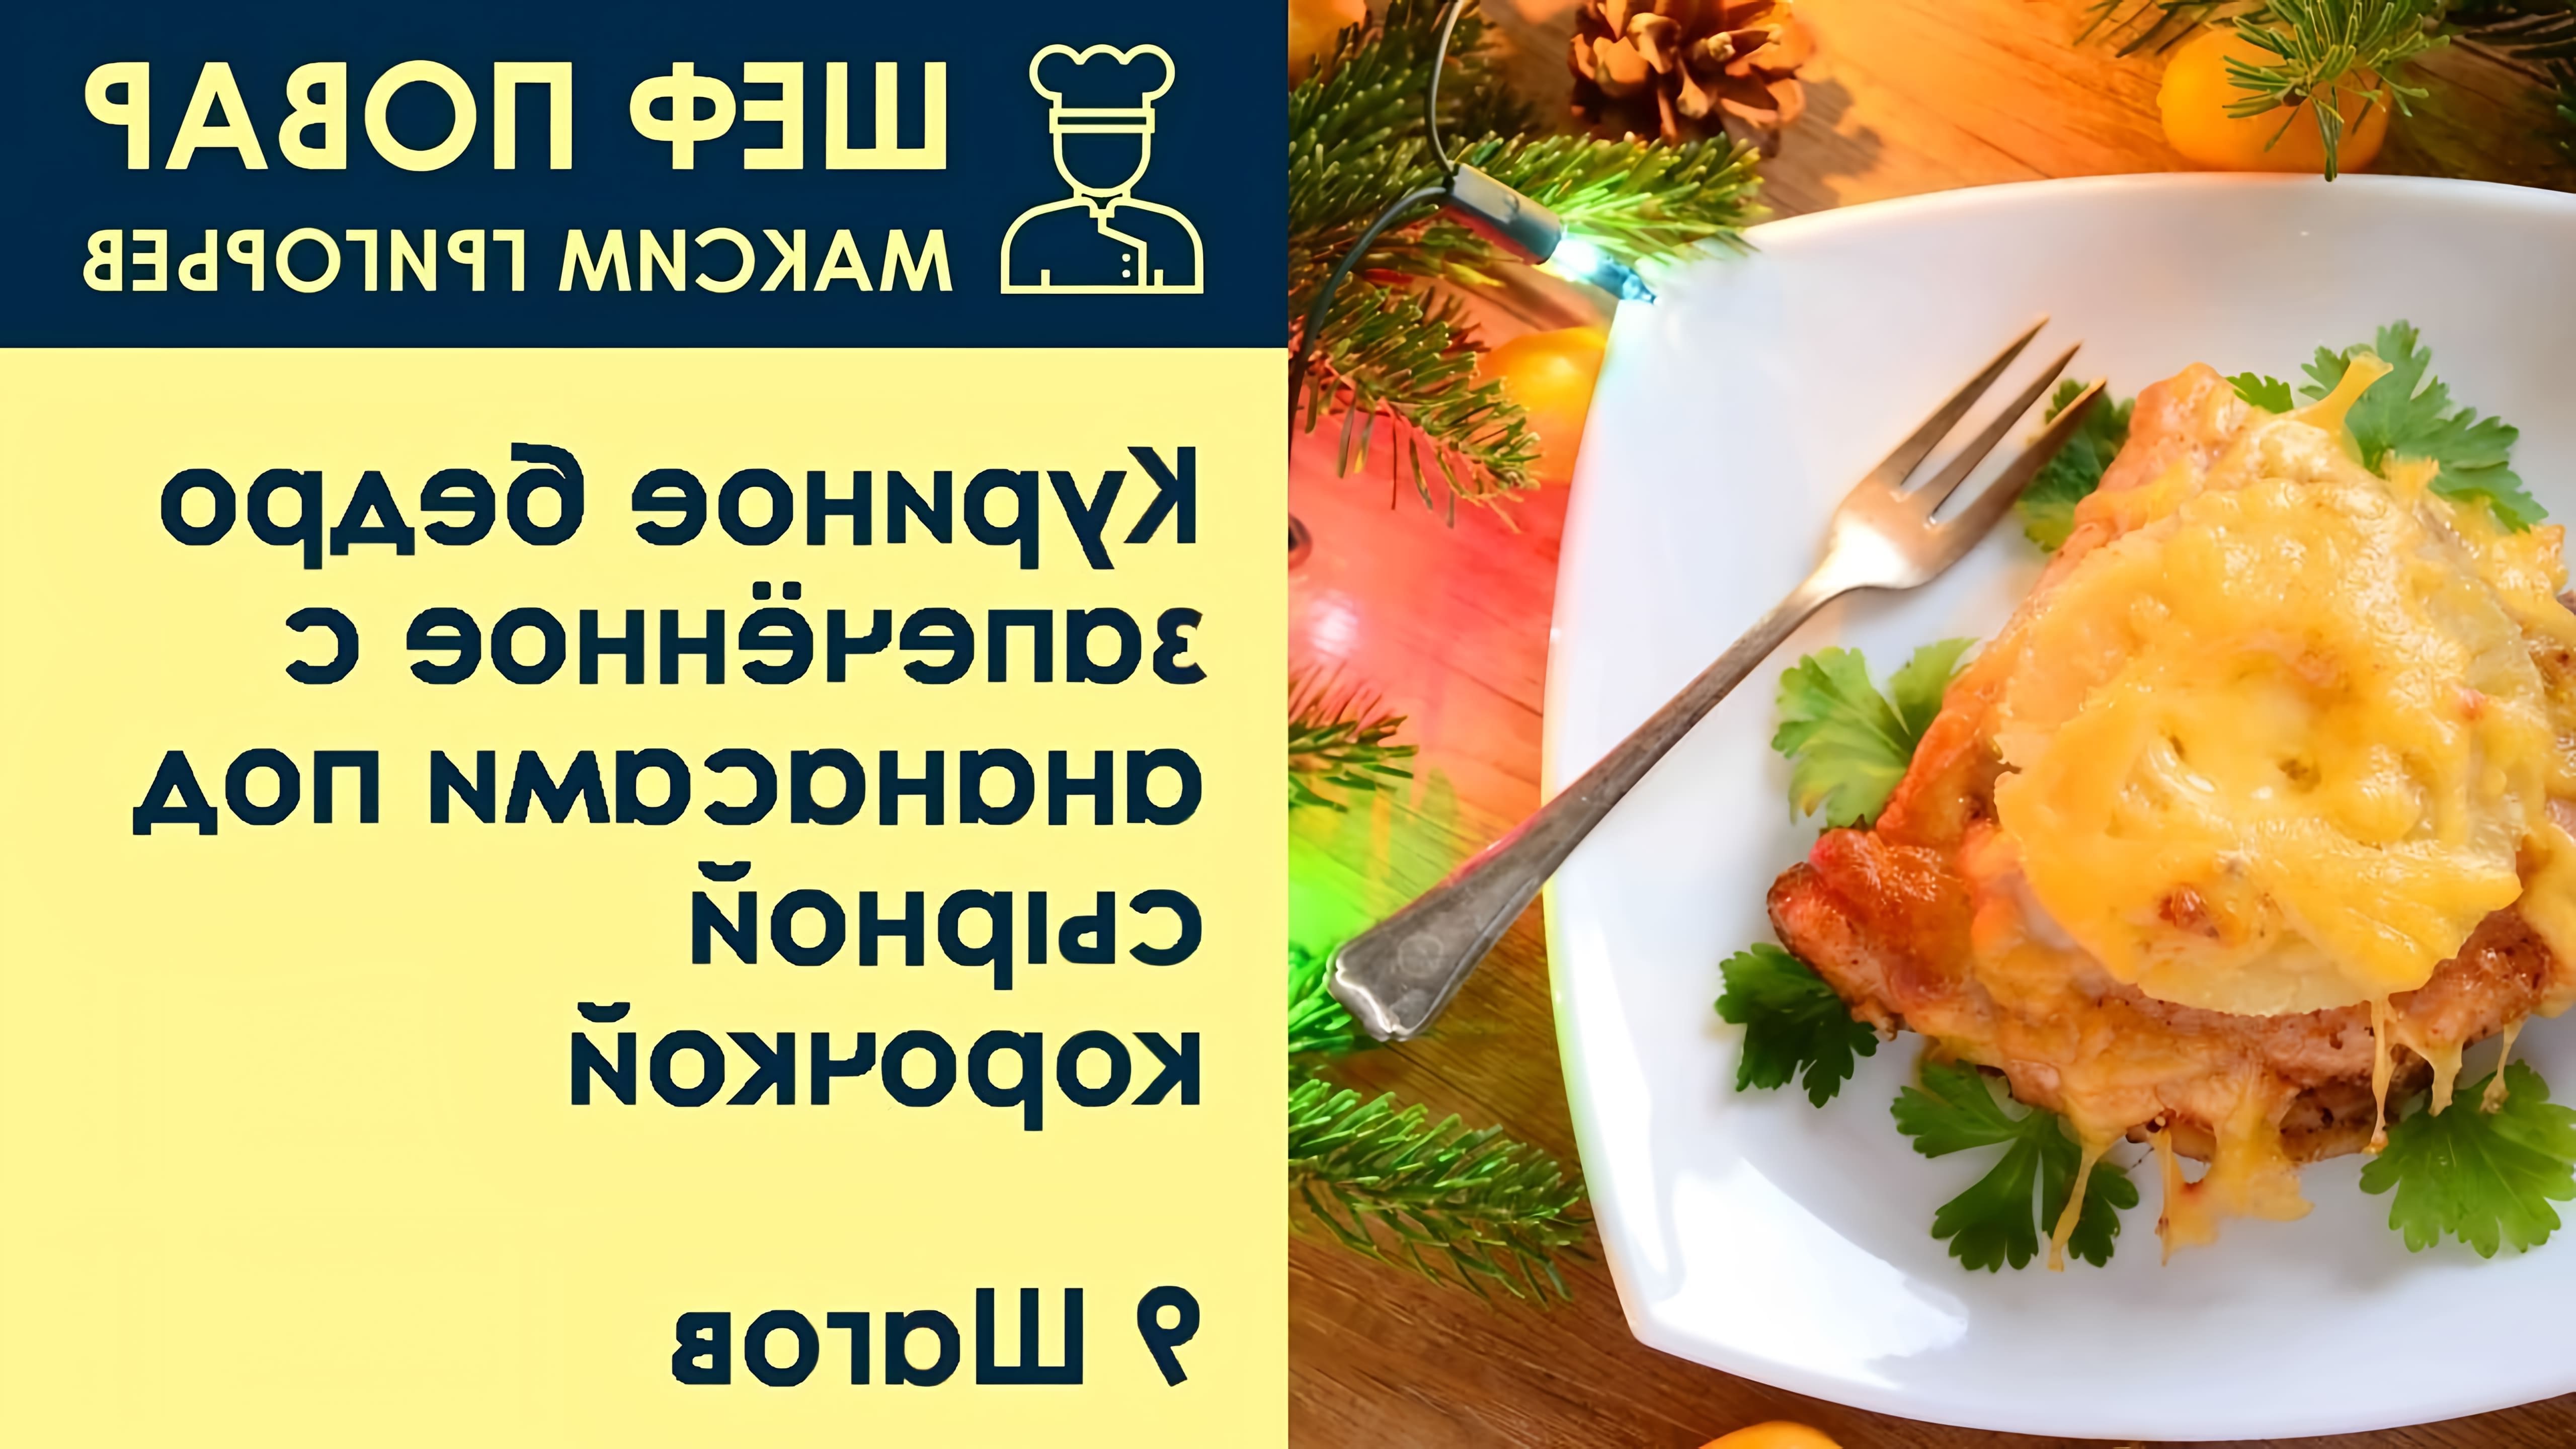 В данном видео шеф-повар Максим Григорьев представляет рецепт запеченного куриного бедра с ананасами под сырной корочкой